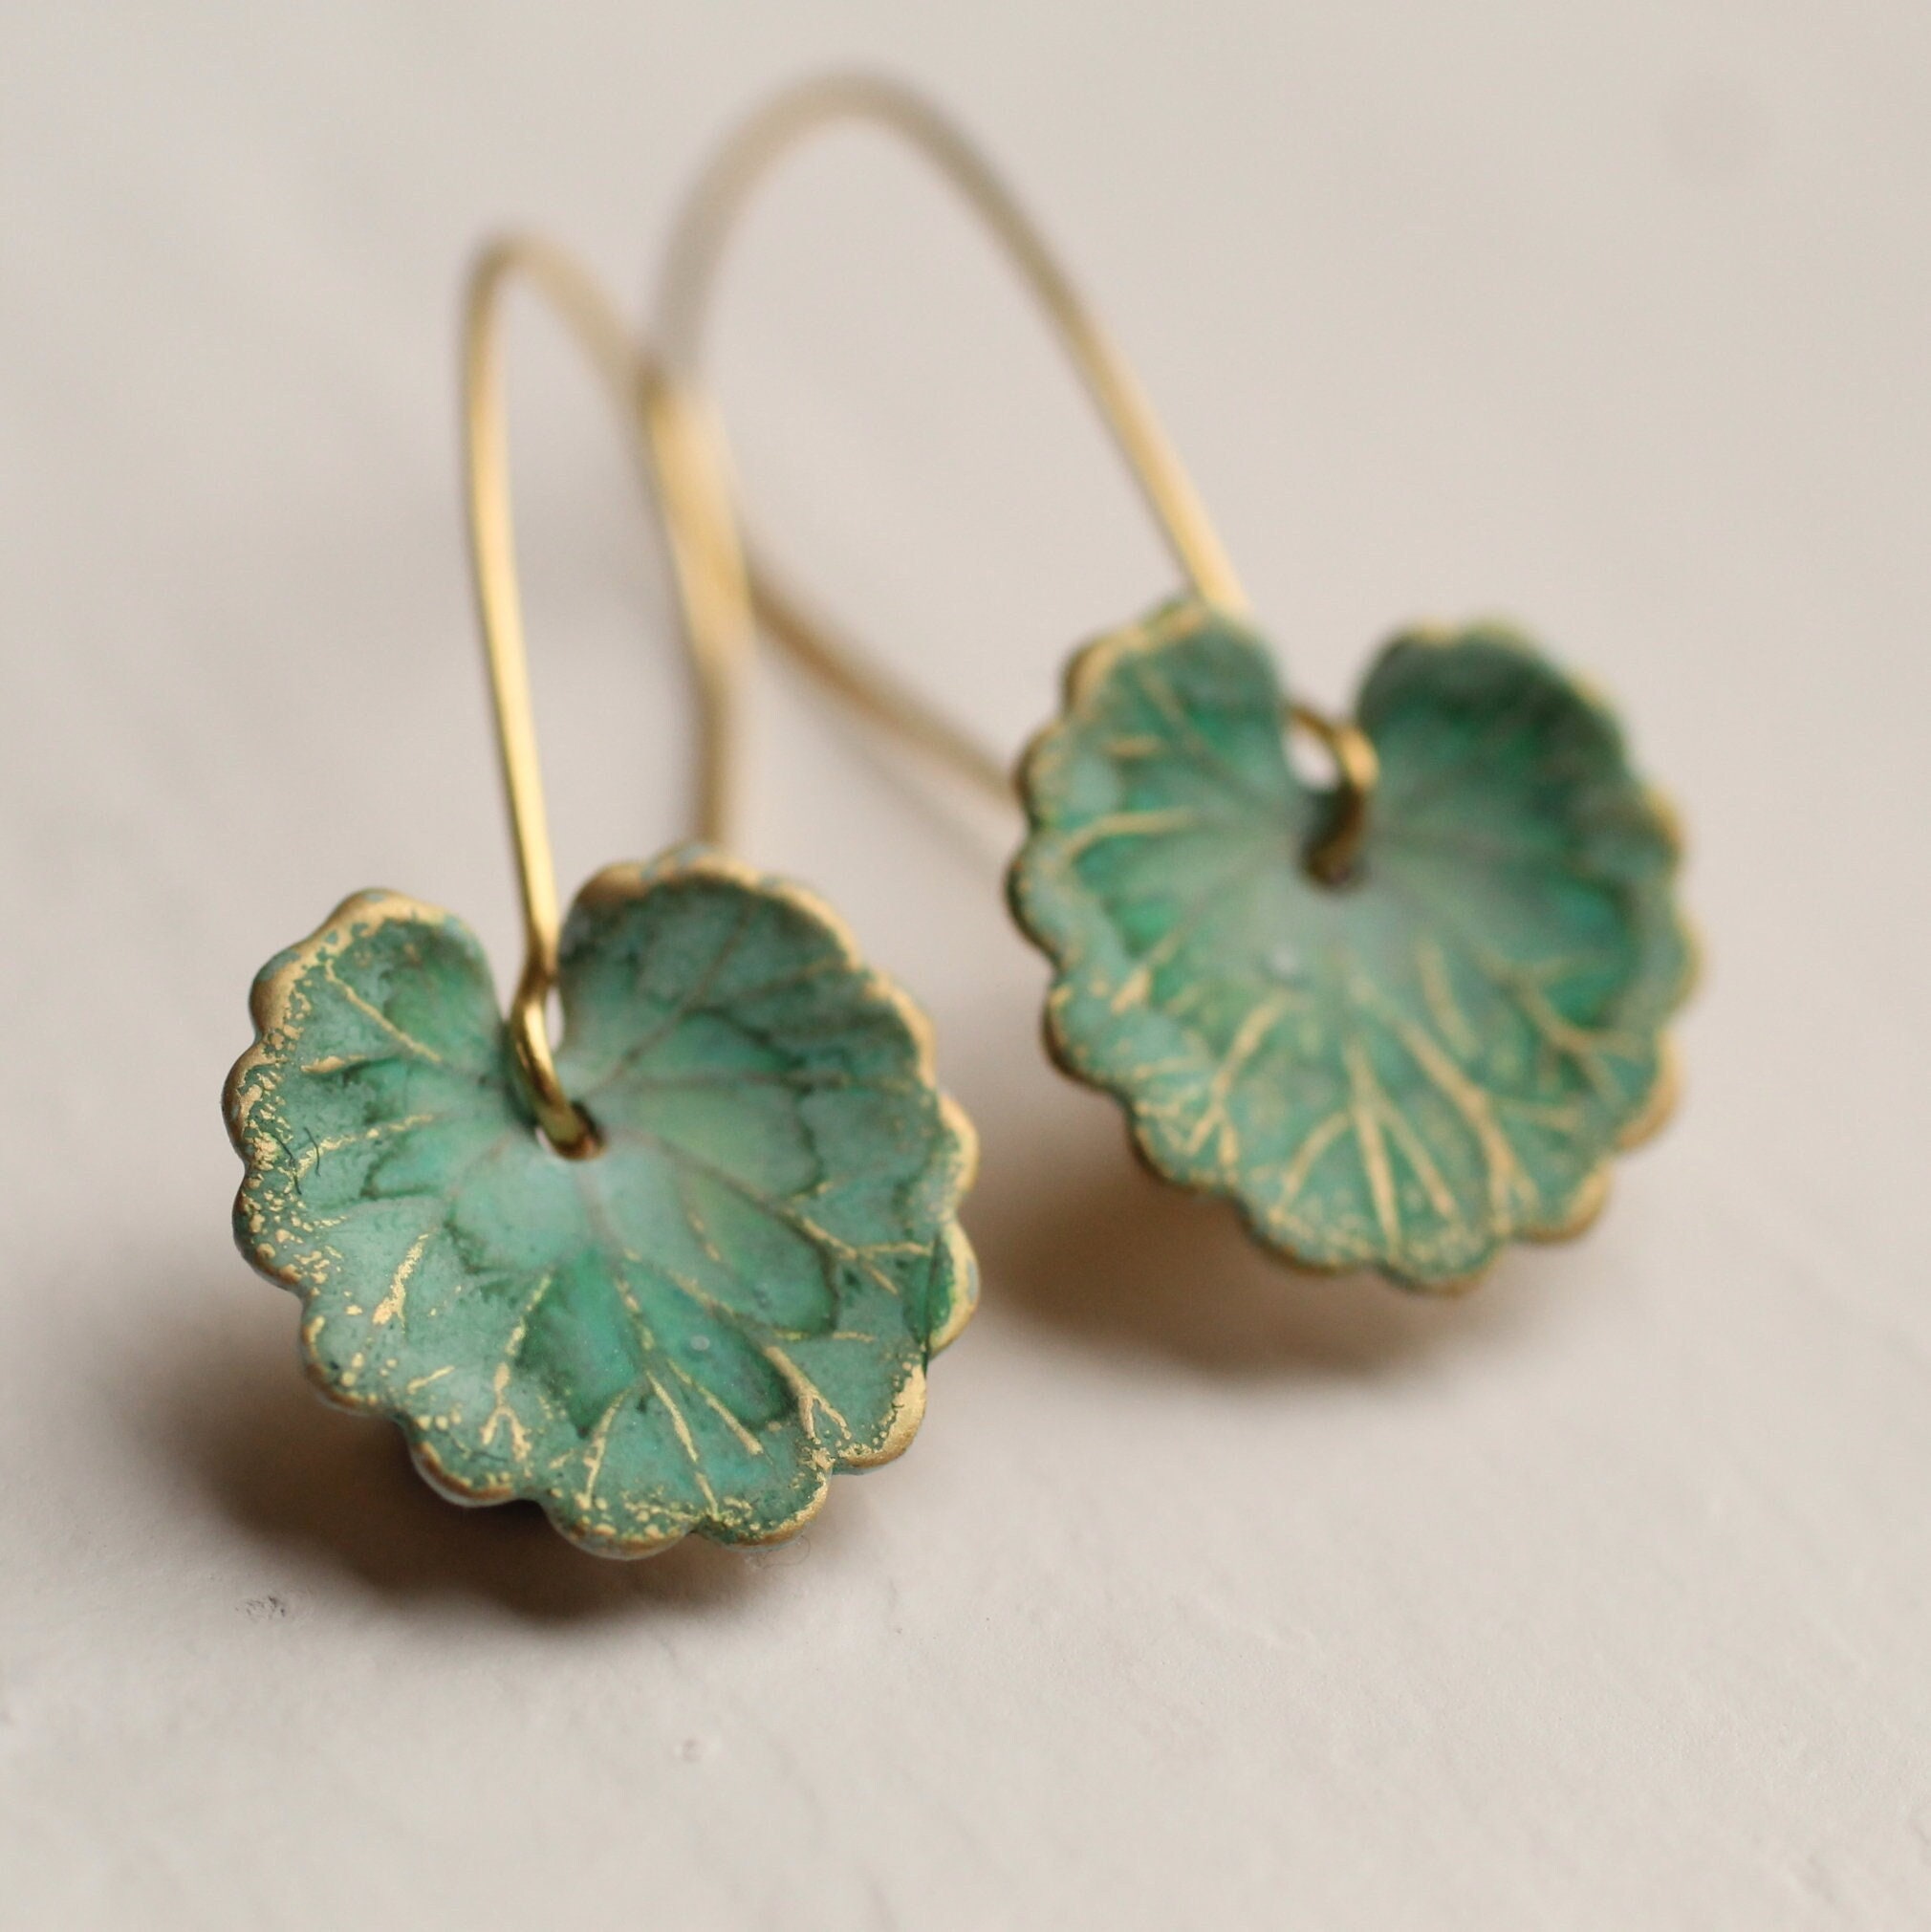 Leaf earrings - leaf studs - jade earrings - nature - green leaf earrings -  green leaves - a pair of carved jade leaf stud earrings